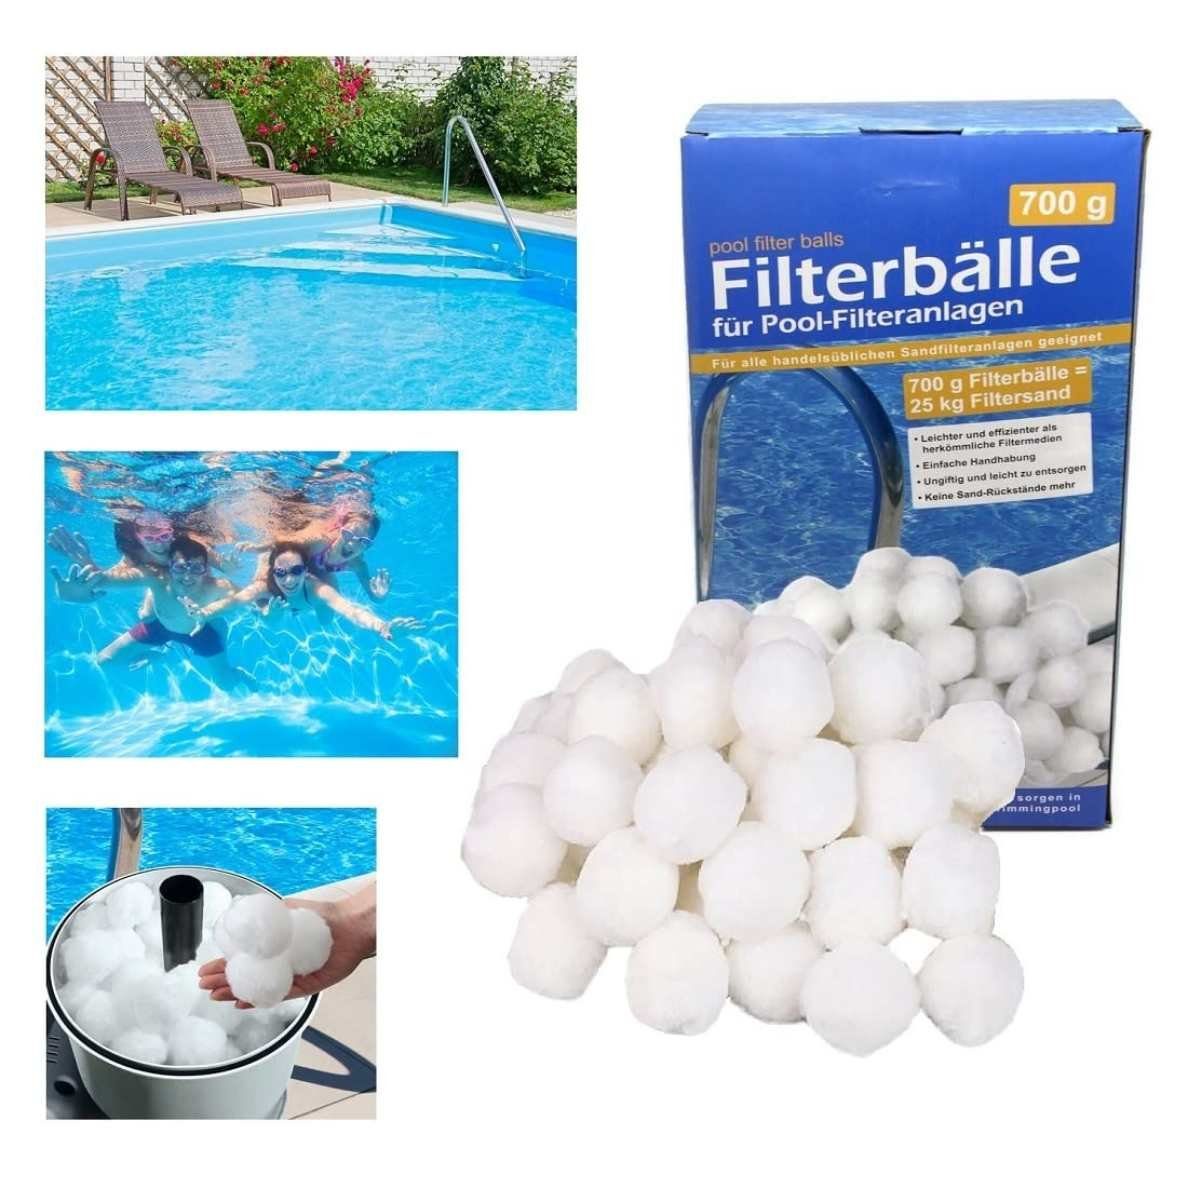 Bada Bing Filterbälle Filterbälle Filter Balls für Poolfilteranlagen, für  Pool-Filteranlagen, Sandfilteranlagen, 0,7 kg, 100 % recyclebar, waschbar,  wiederverwendbar, Vielseitig